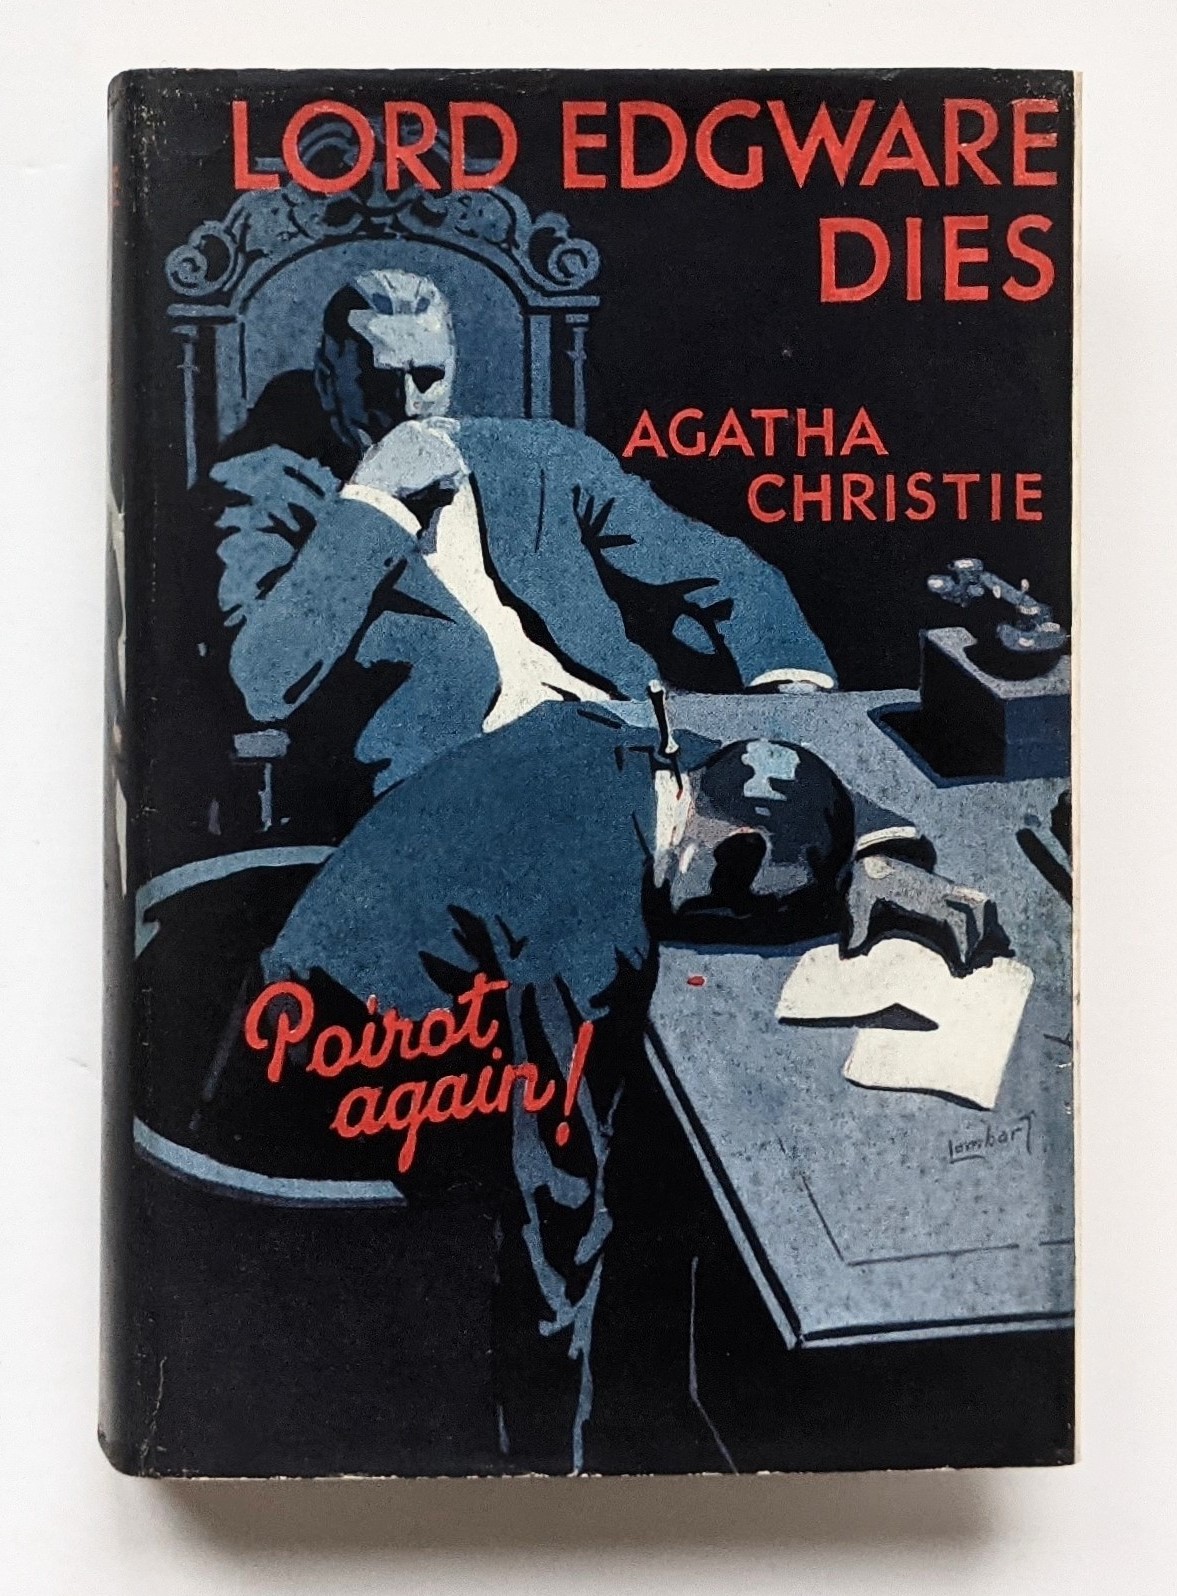 A caccia di edizioni proibitive: “Lord Edgware Dies”, di Agatha Christie (Collins The Crime Club, 1933)